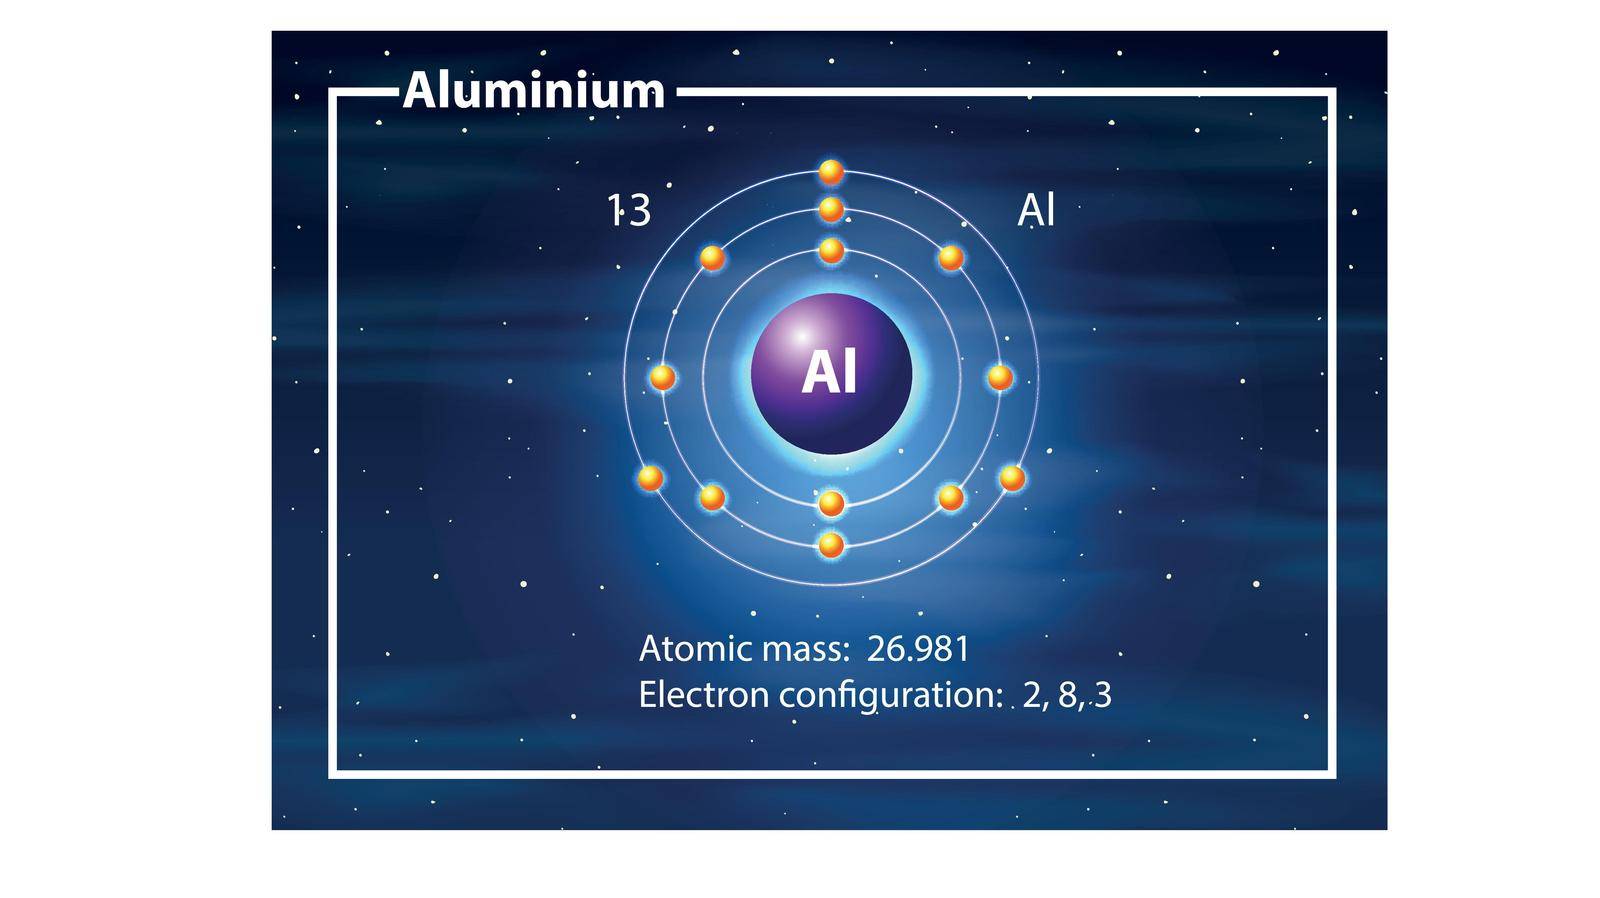 A Aluminium atom diagram illustration